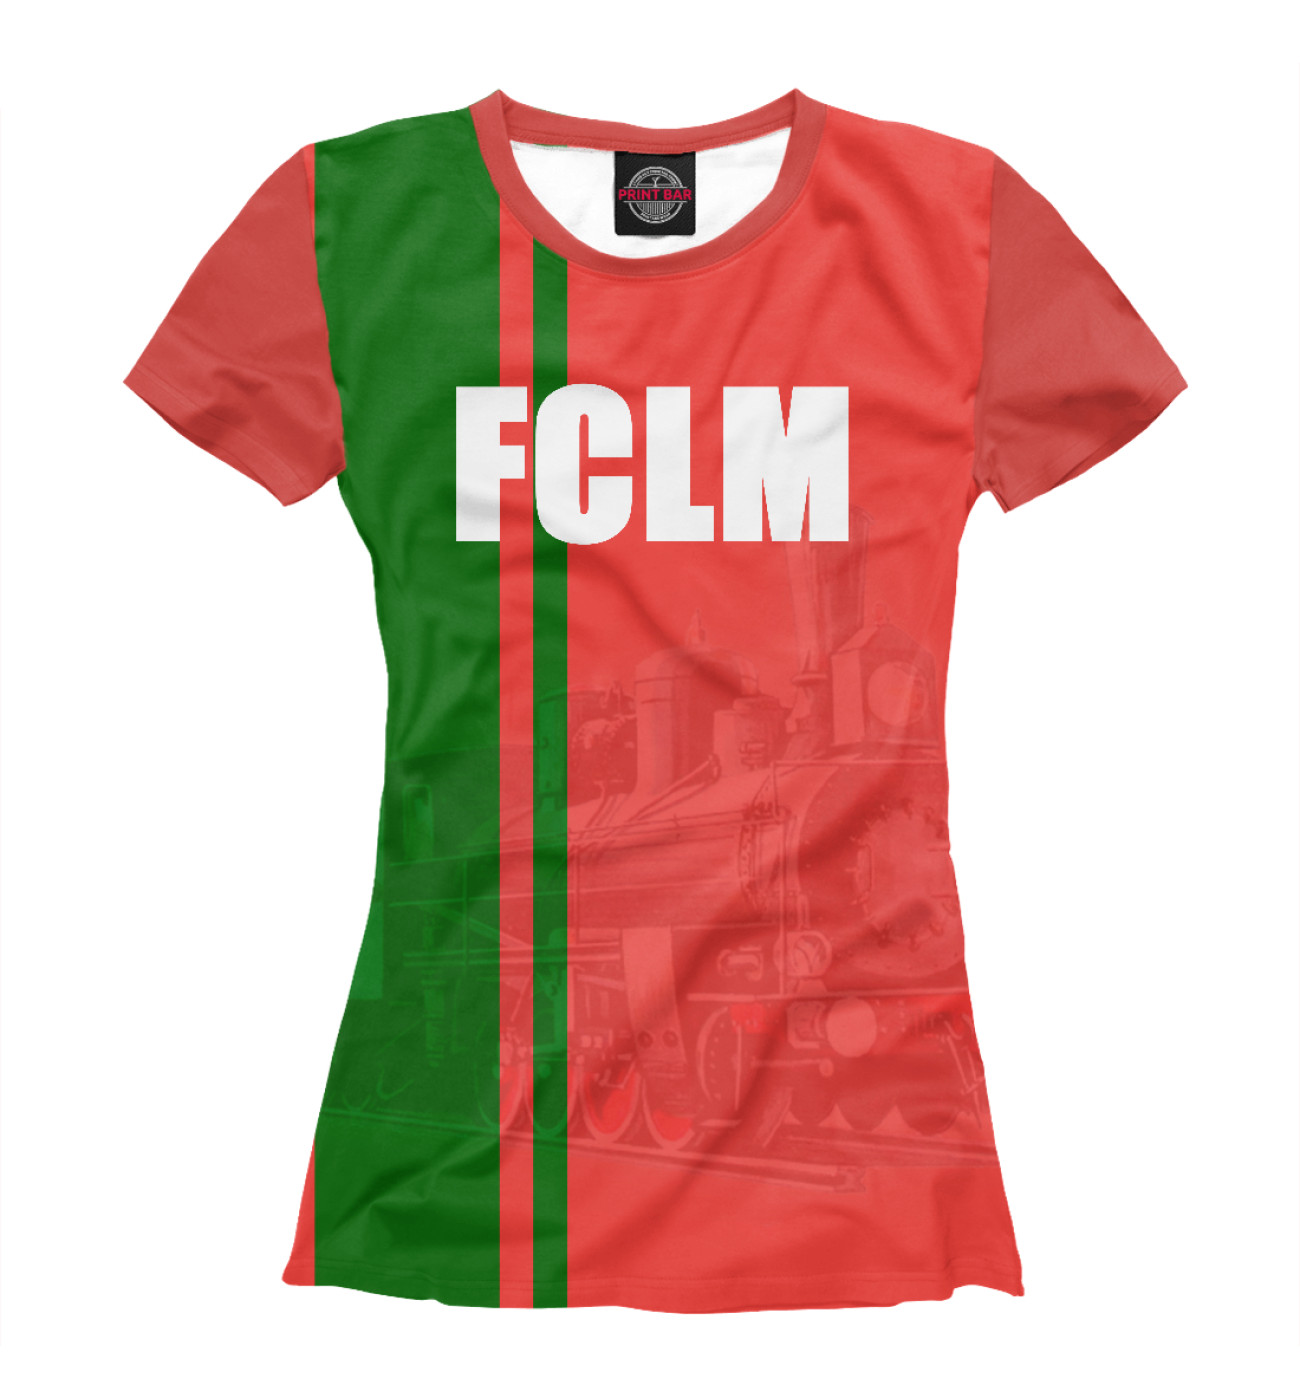 Женская Футболка FCLM, артикул: FTO-794917-fut-1